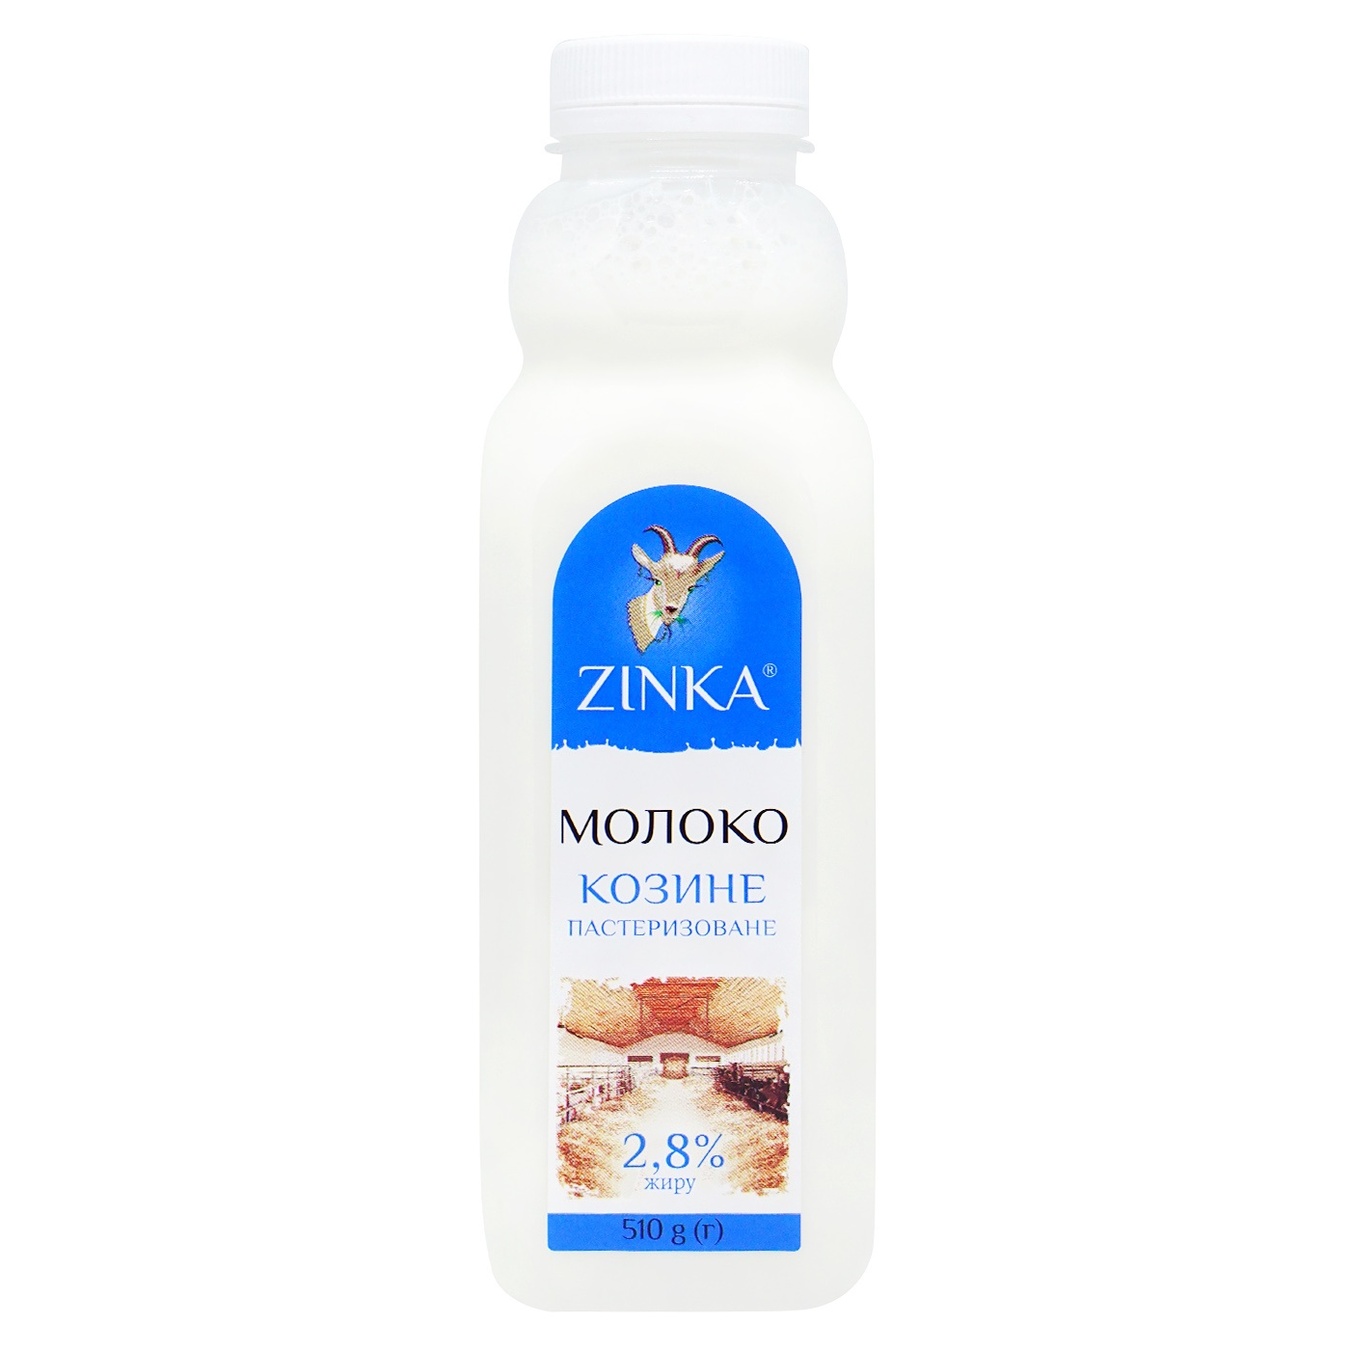 Молоко Zinka козине пастеризоване 2,8% 510г